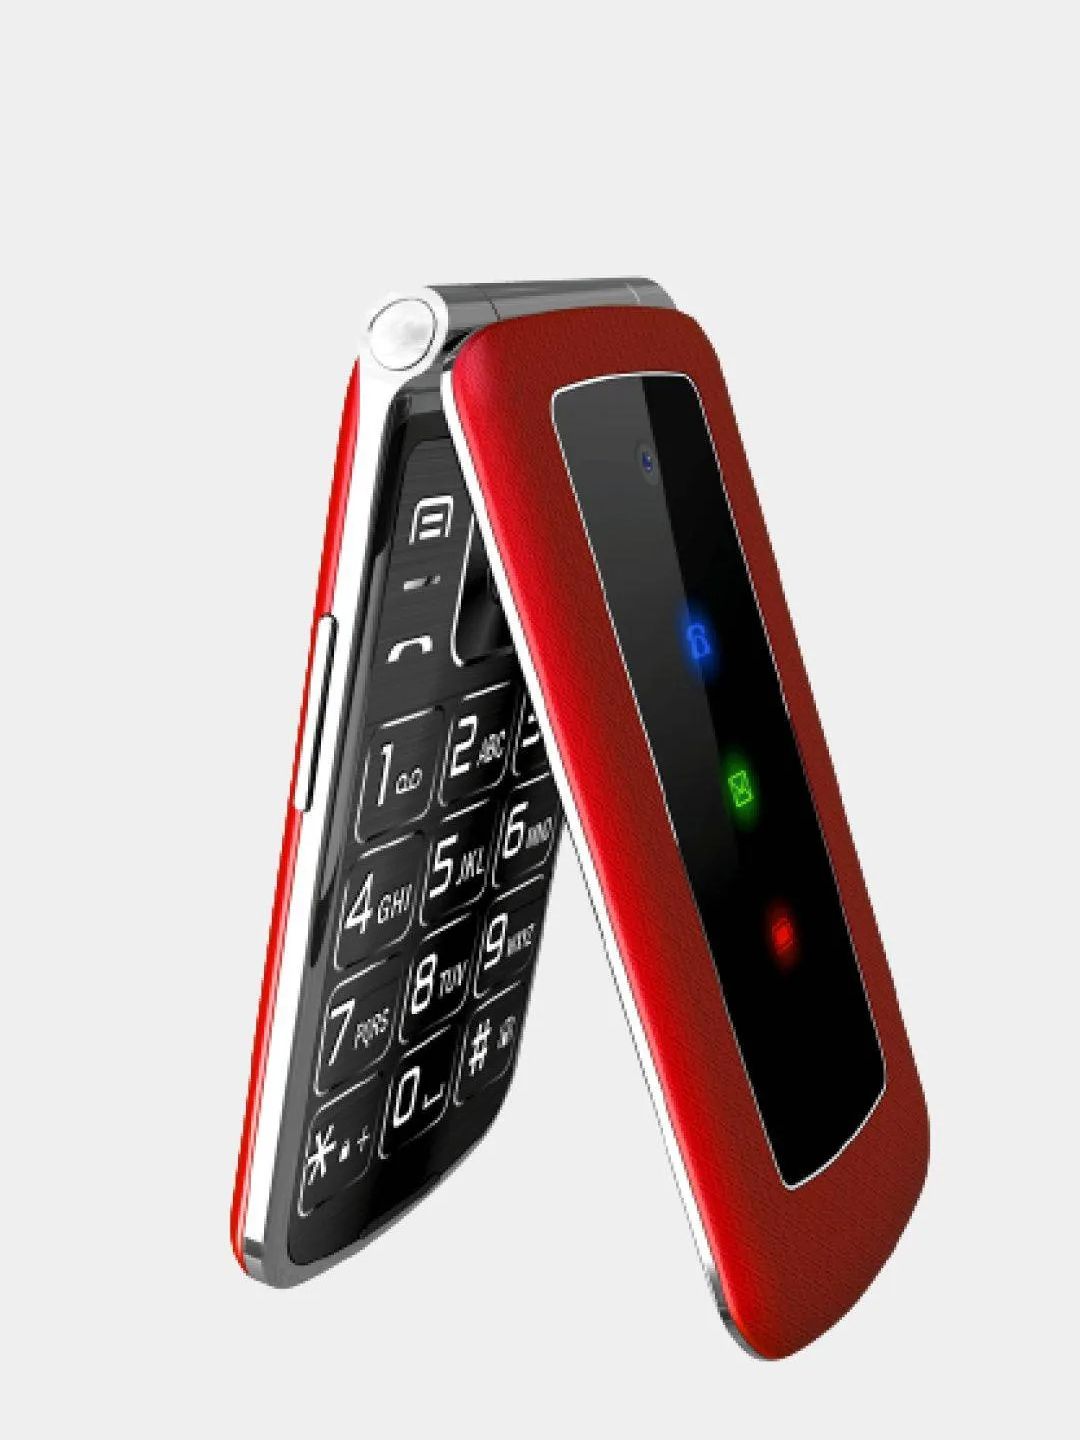 Телефон раскладушка отзывы. Мобильный телефон Olmio f28 (черный). Телефон Olmio f28 (Red). Сотовый телефон Olmio f28 Red. Мобильный телефон Olmio f28 красный.